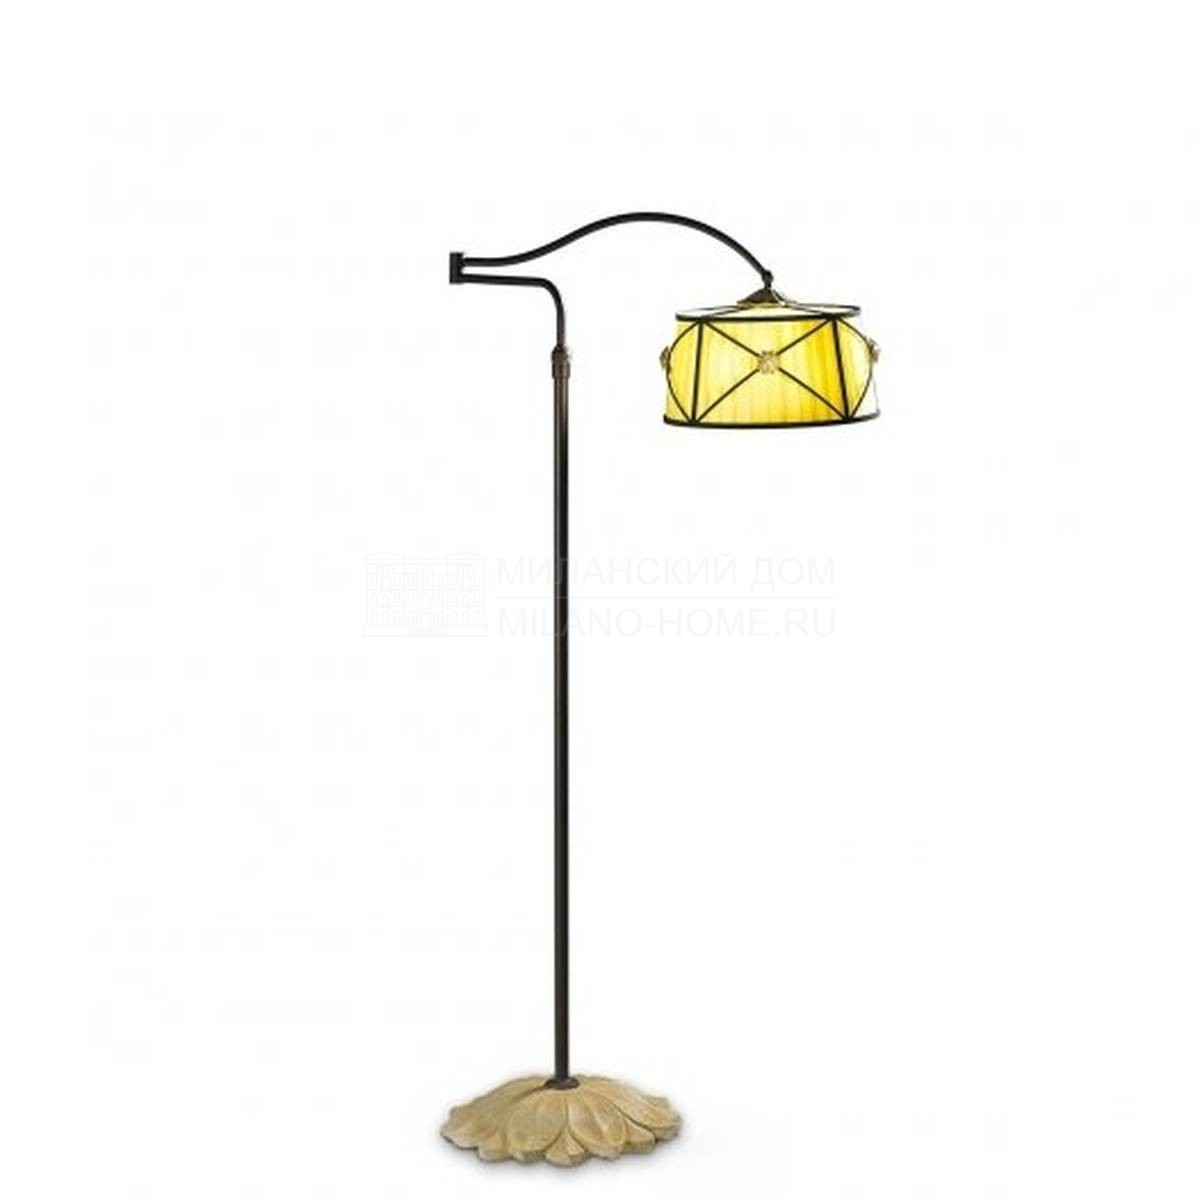 Торшер Iris floor lamp with articulated arm из Италии фабрики MARIONI